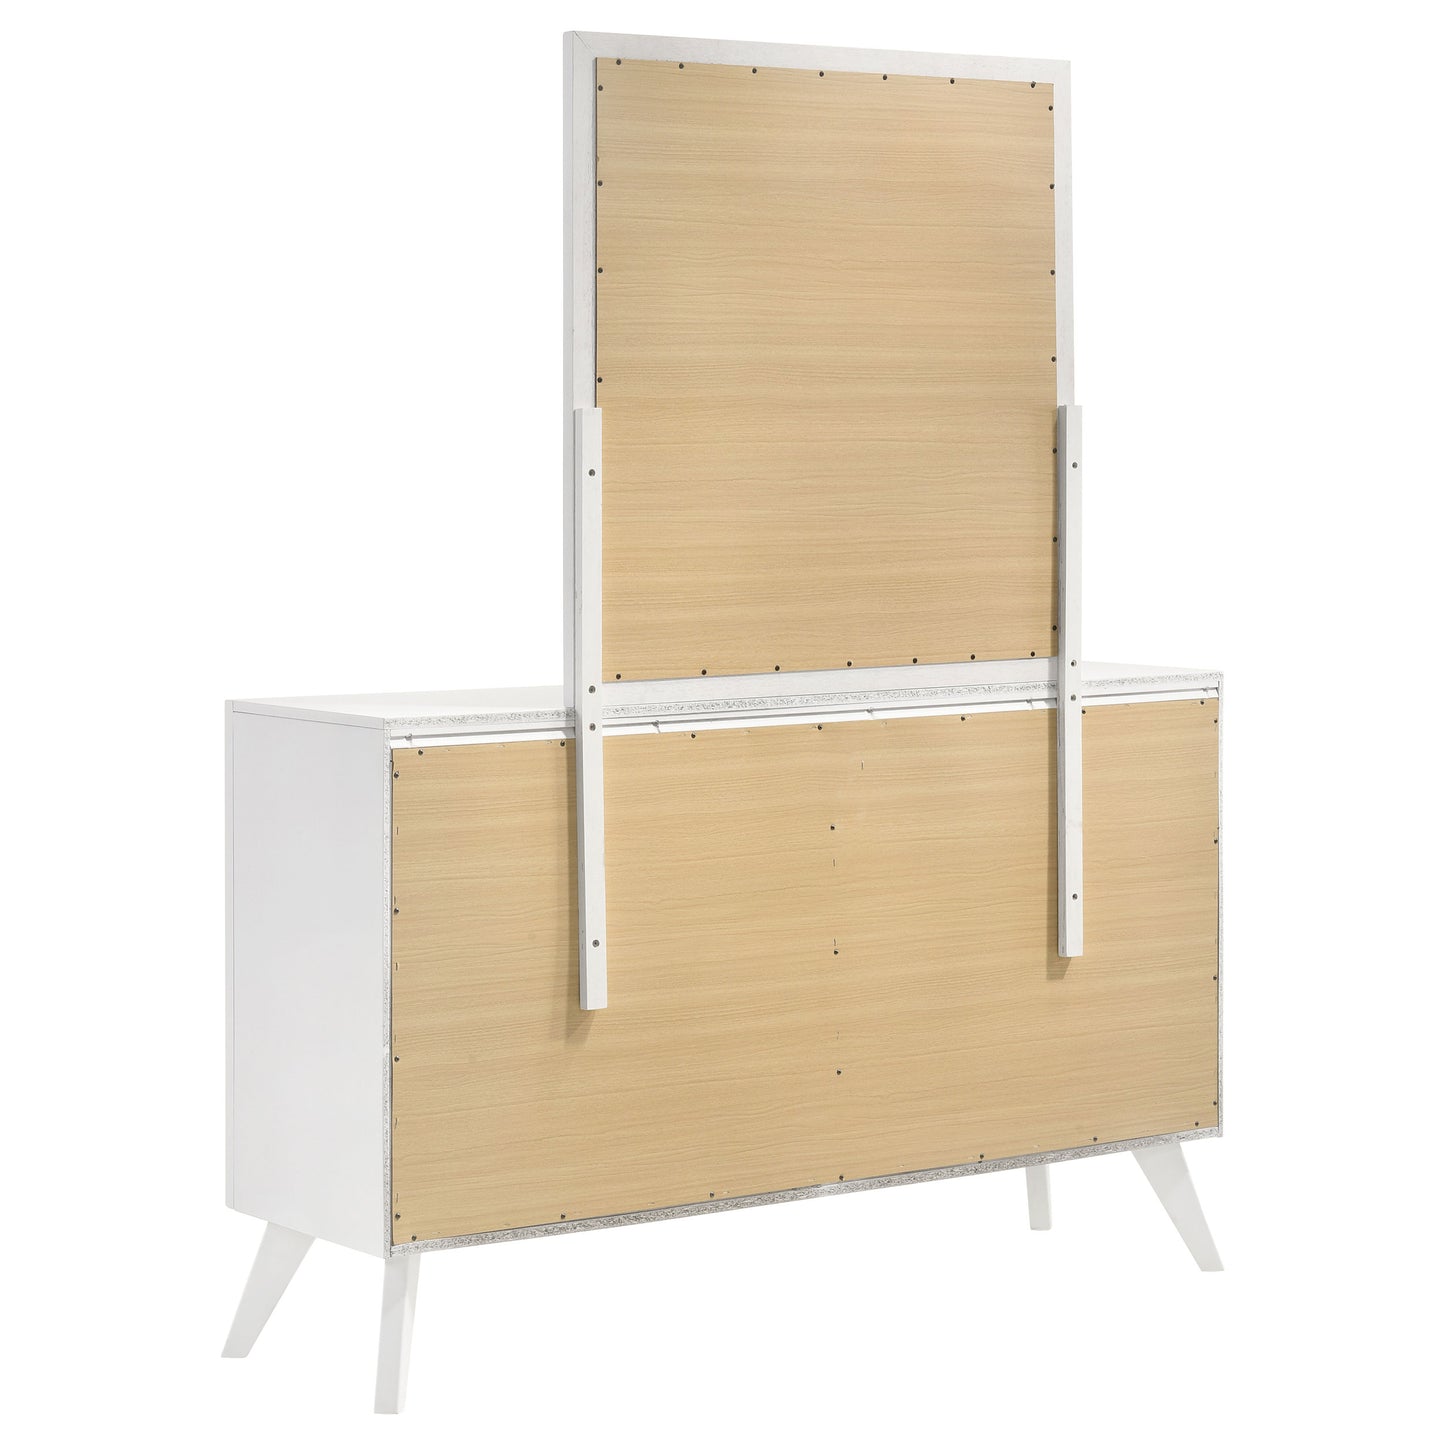 Janelle 6-drawer Dresser with Mirror White